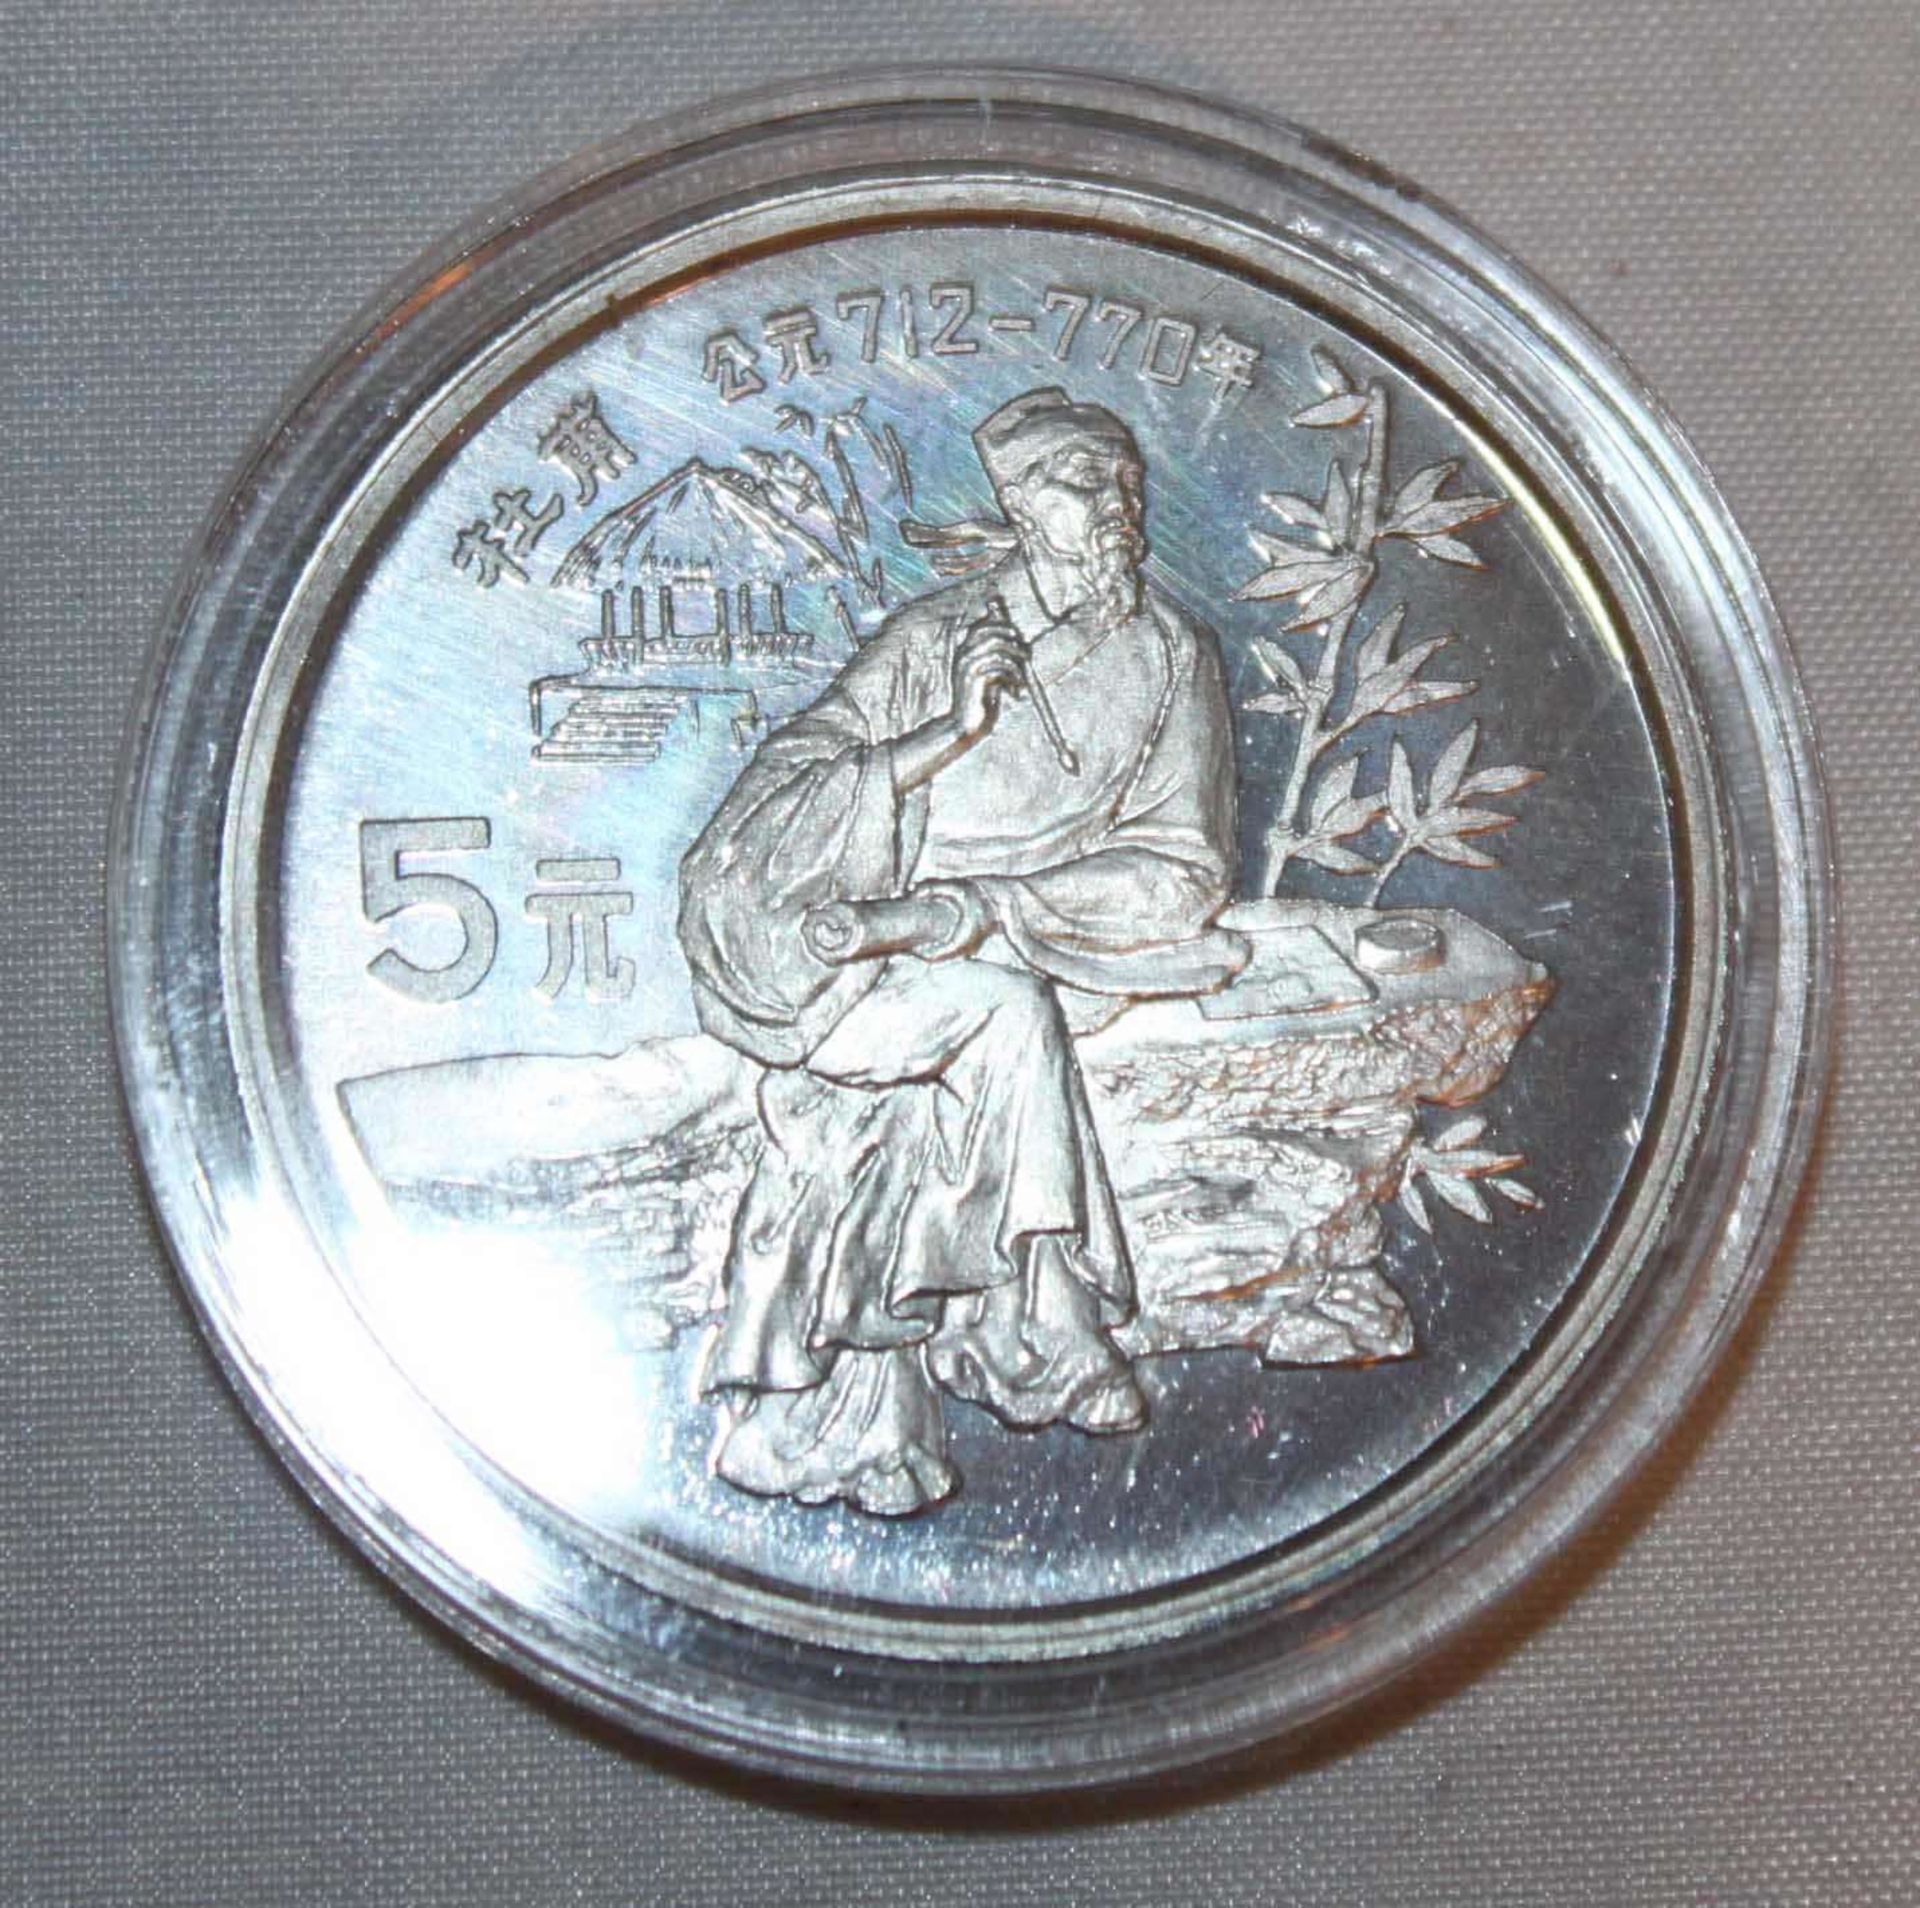 China 1987, 5 Yuan - Silbermünze "Du Fu". Silber 900. Gewicht: 22,2 gr.. In Kapsel. Erhaltung: PP.